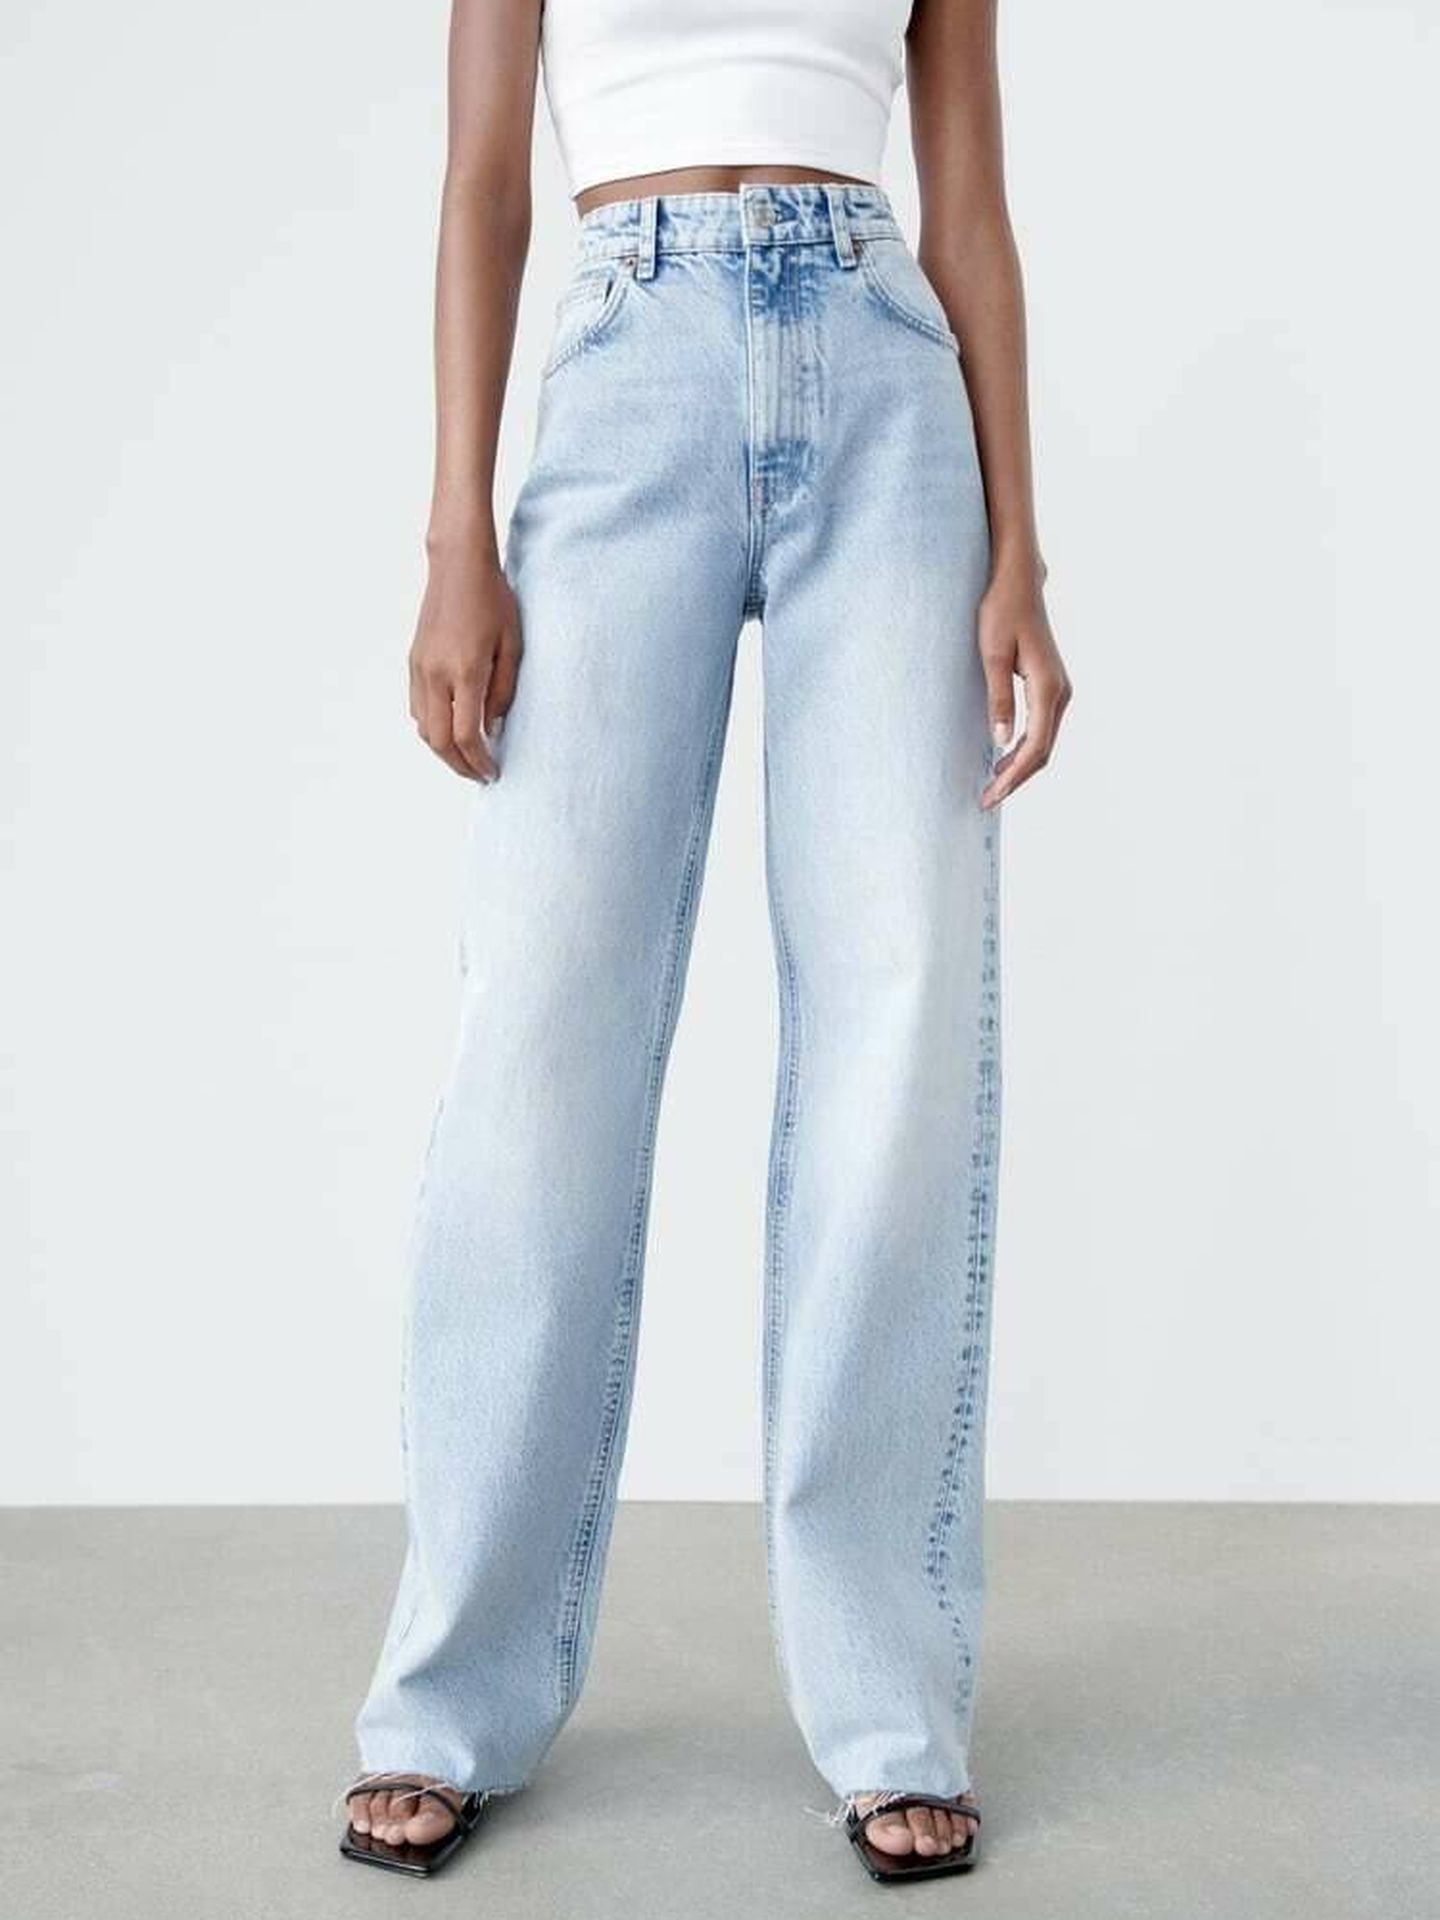 Las mejores ofertas en Zara Jeans para De mujer